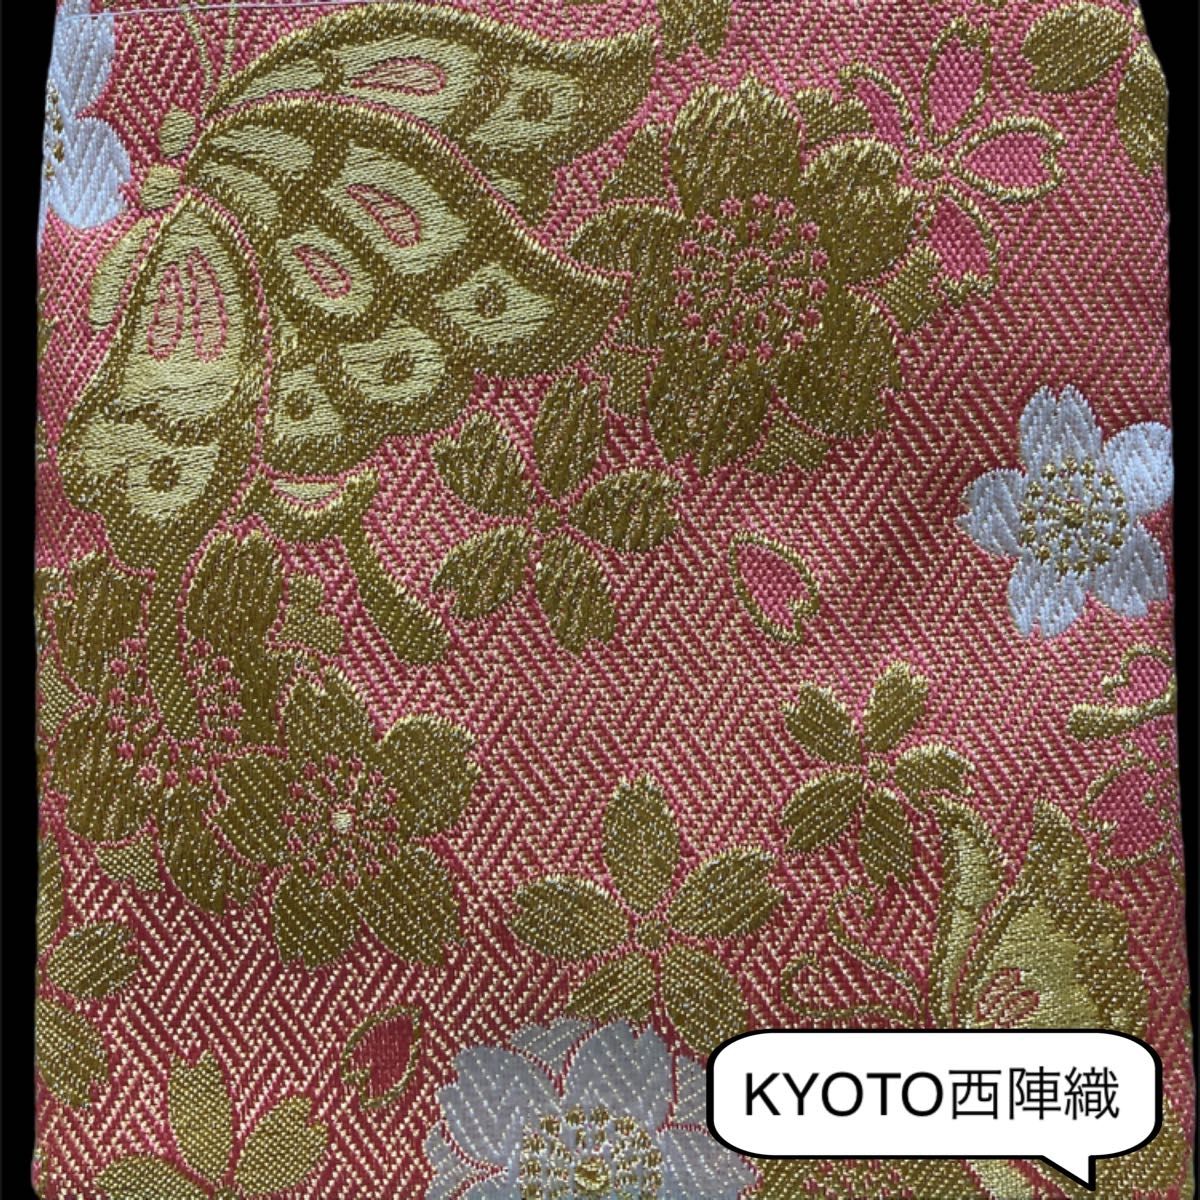 贅沢で大人可愛い1つは欲しい和のぽーち 豪華で美しい日本の伝統KYOTO西陣織 多目的ぽーち【No.002】